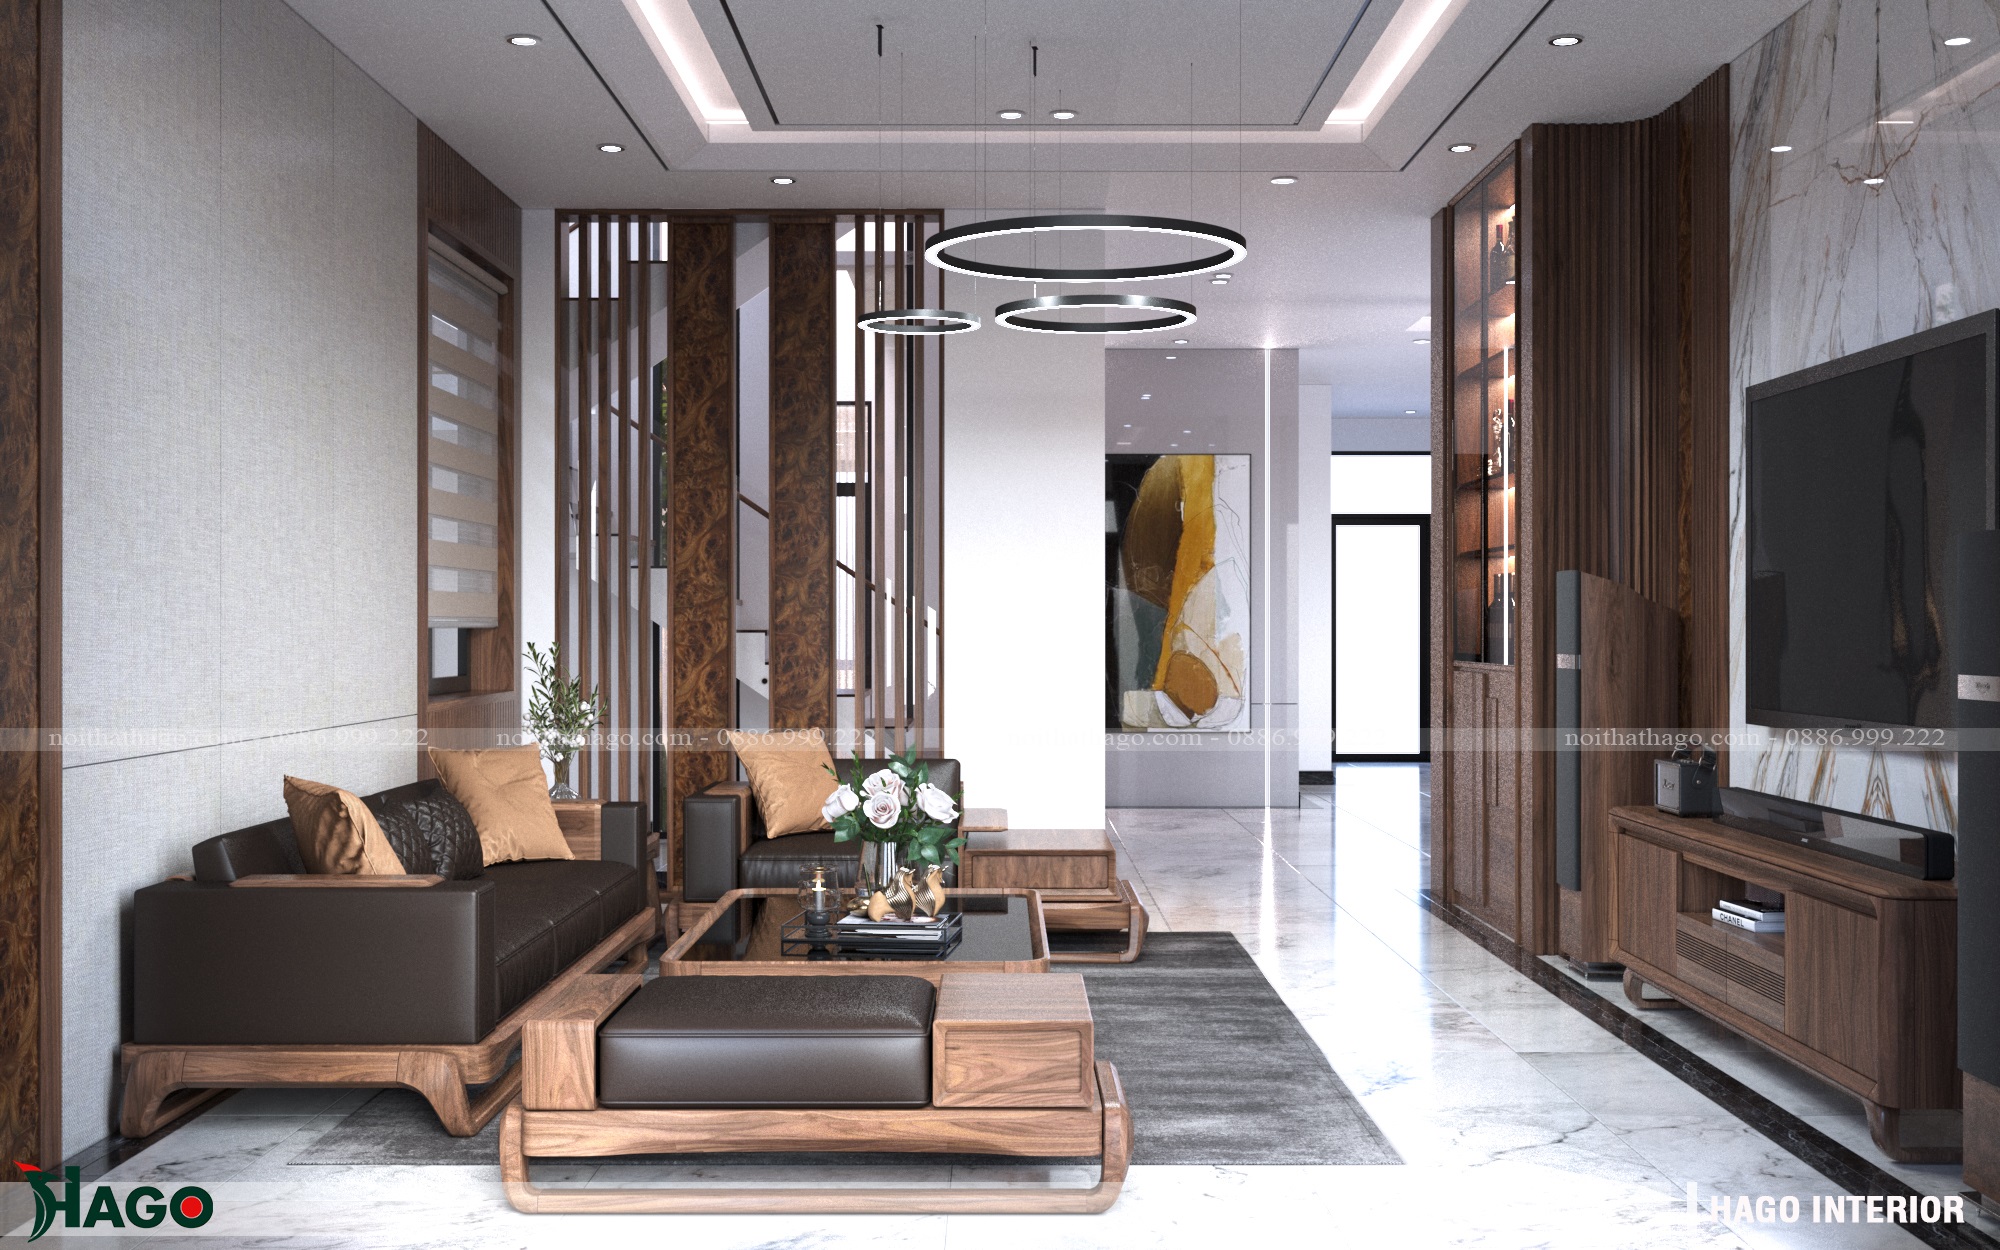 Thiết kế phù hợp cho không gian biệt thự nhà phố chung cư cao cấp nhất tại Vinh